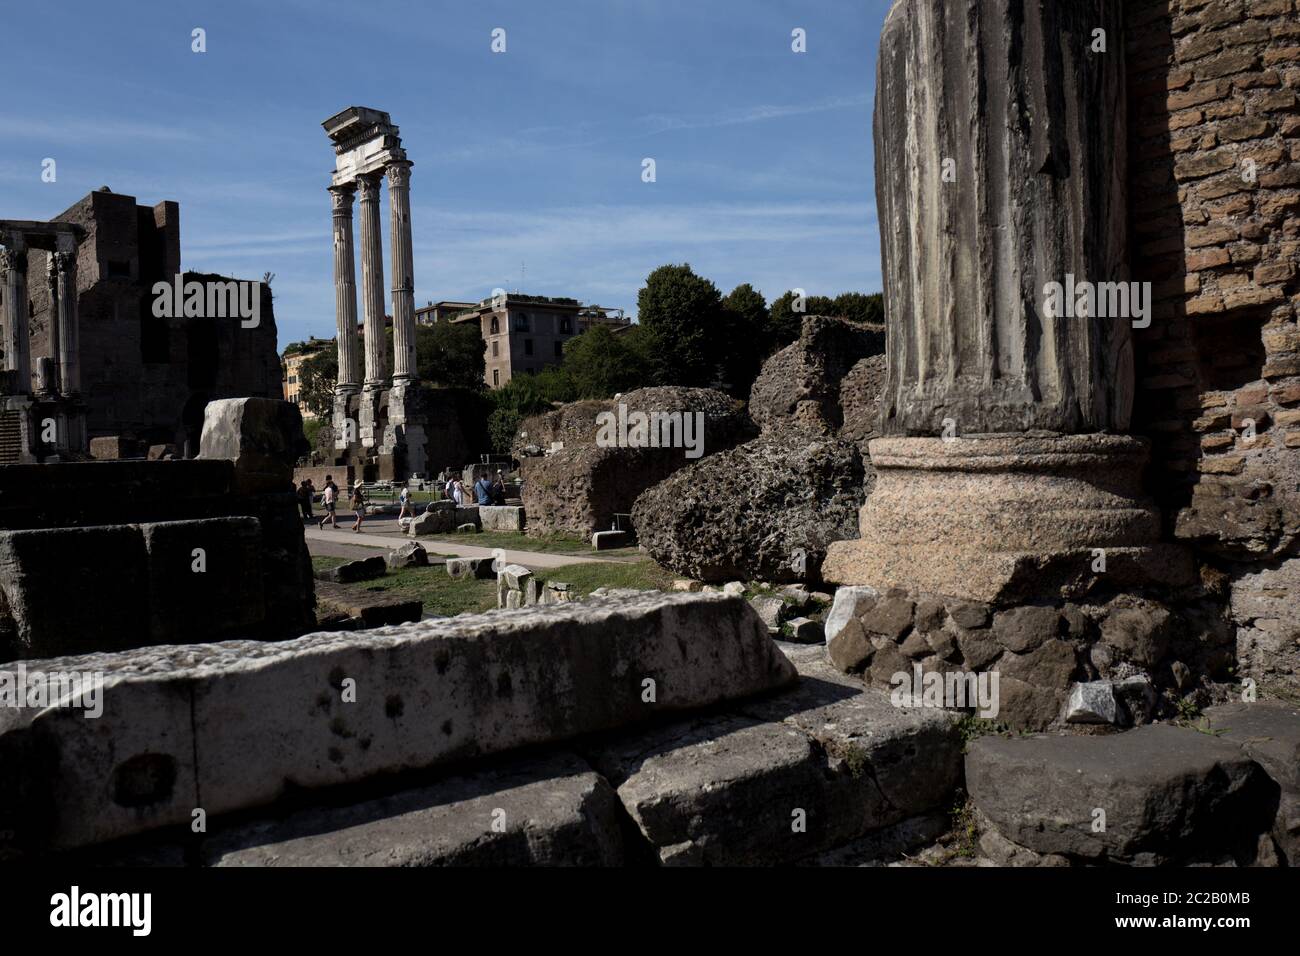 Sito archeologico del forum romano, a Roma, Italia Foto Stock